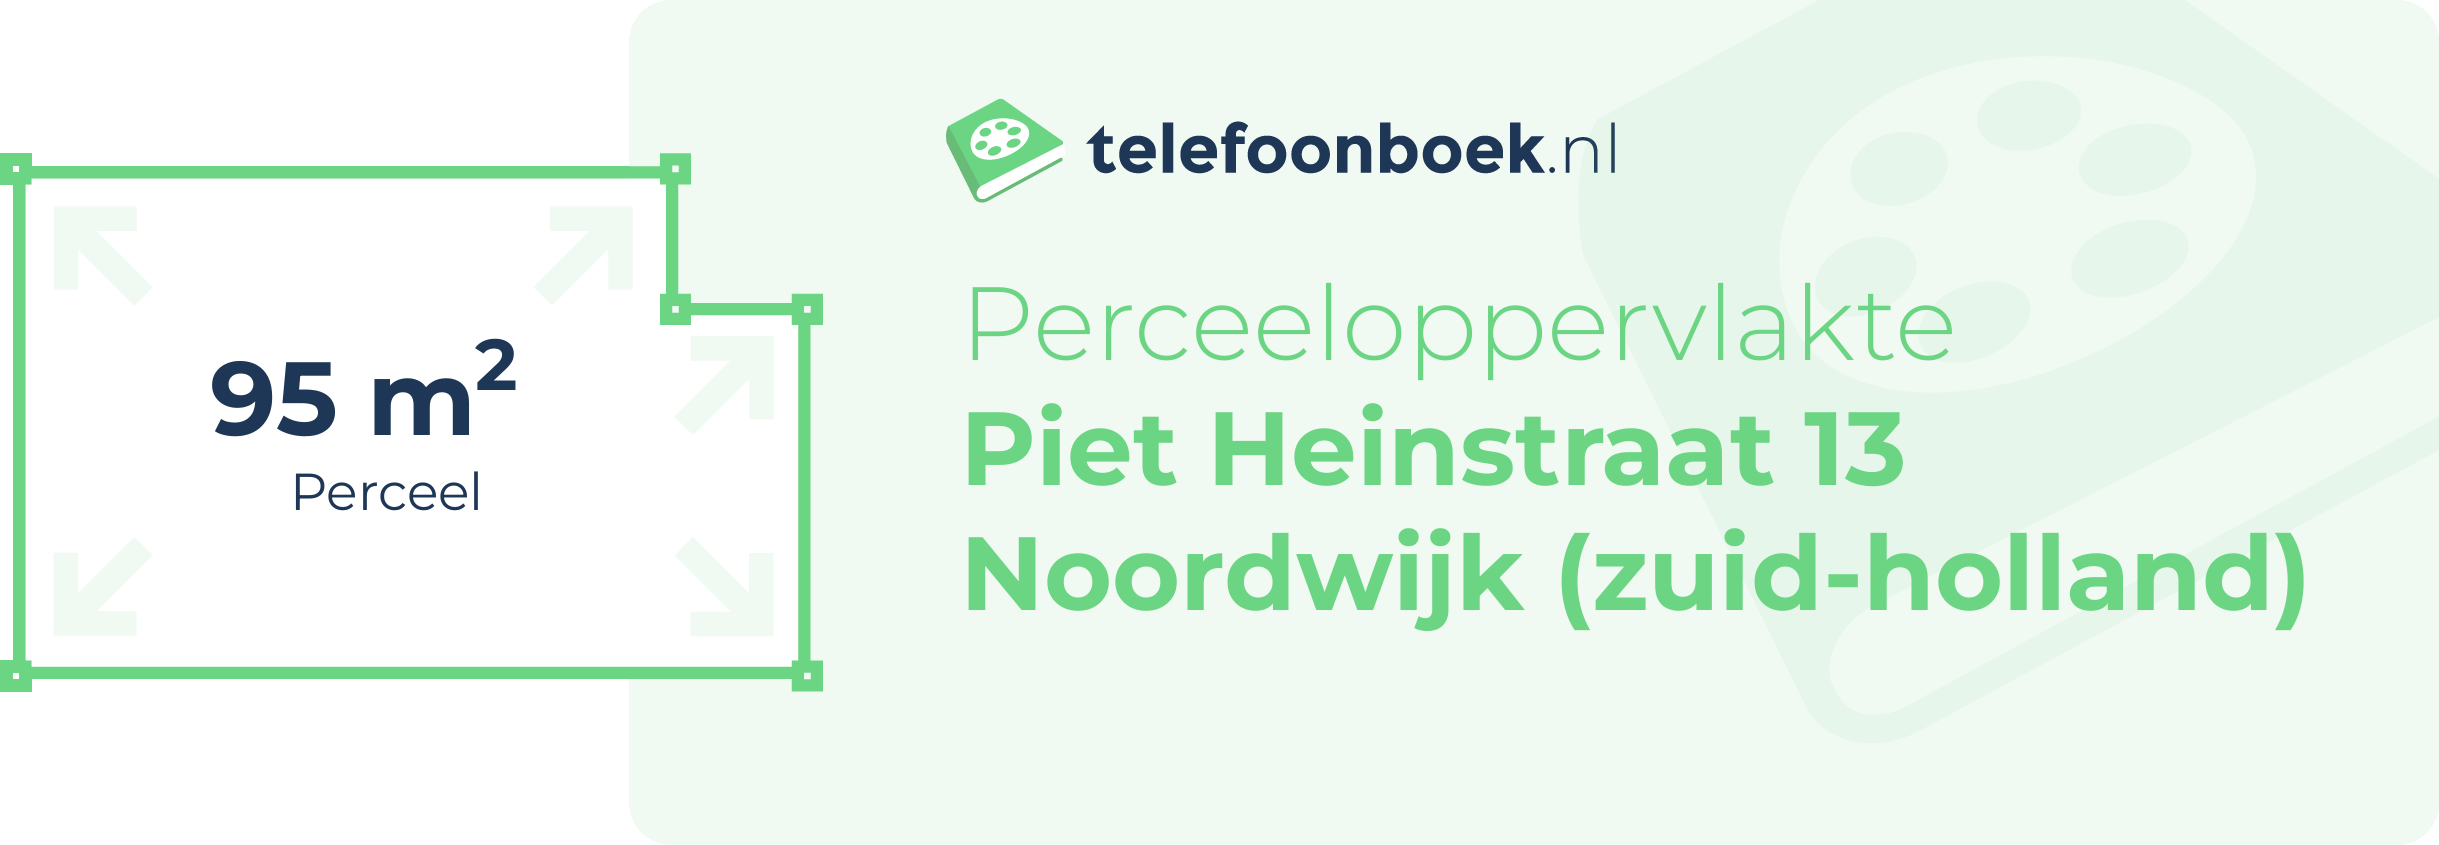 Perceeloppervlakte Piet Heinstraat 13 Noordwijk (Zuid-Holland)